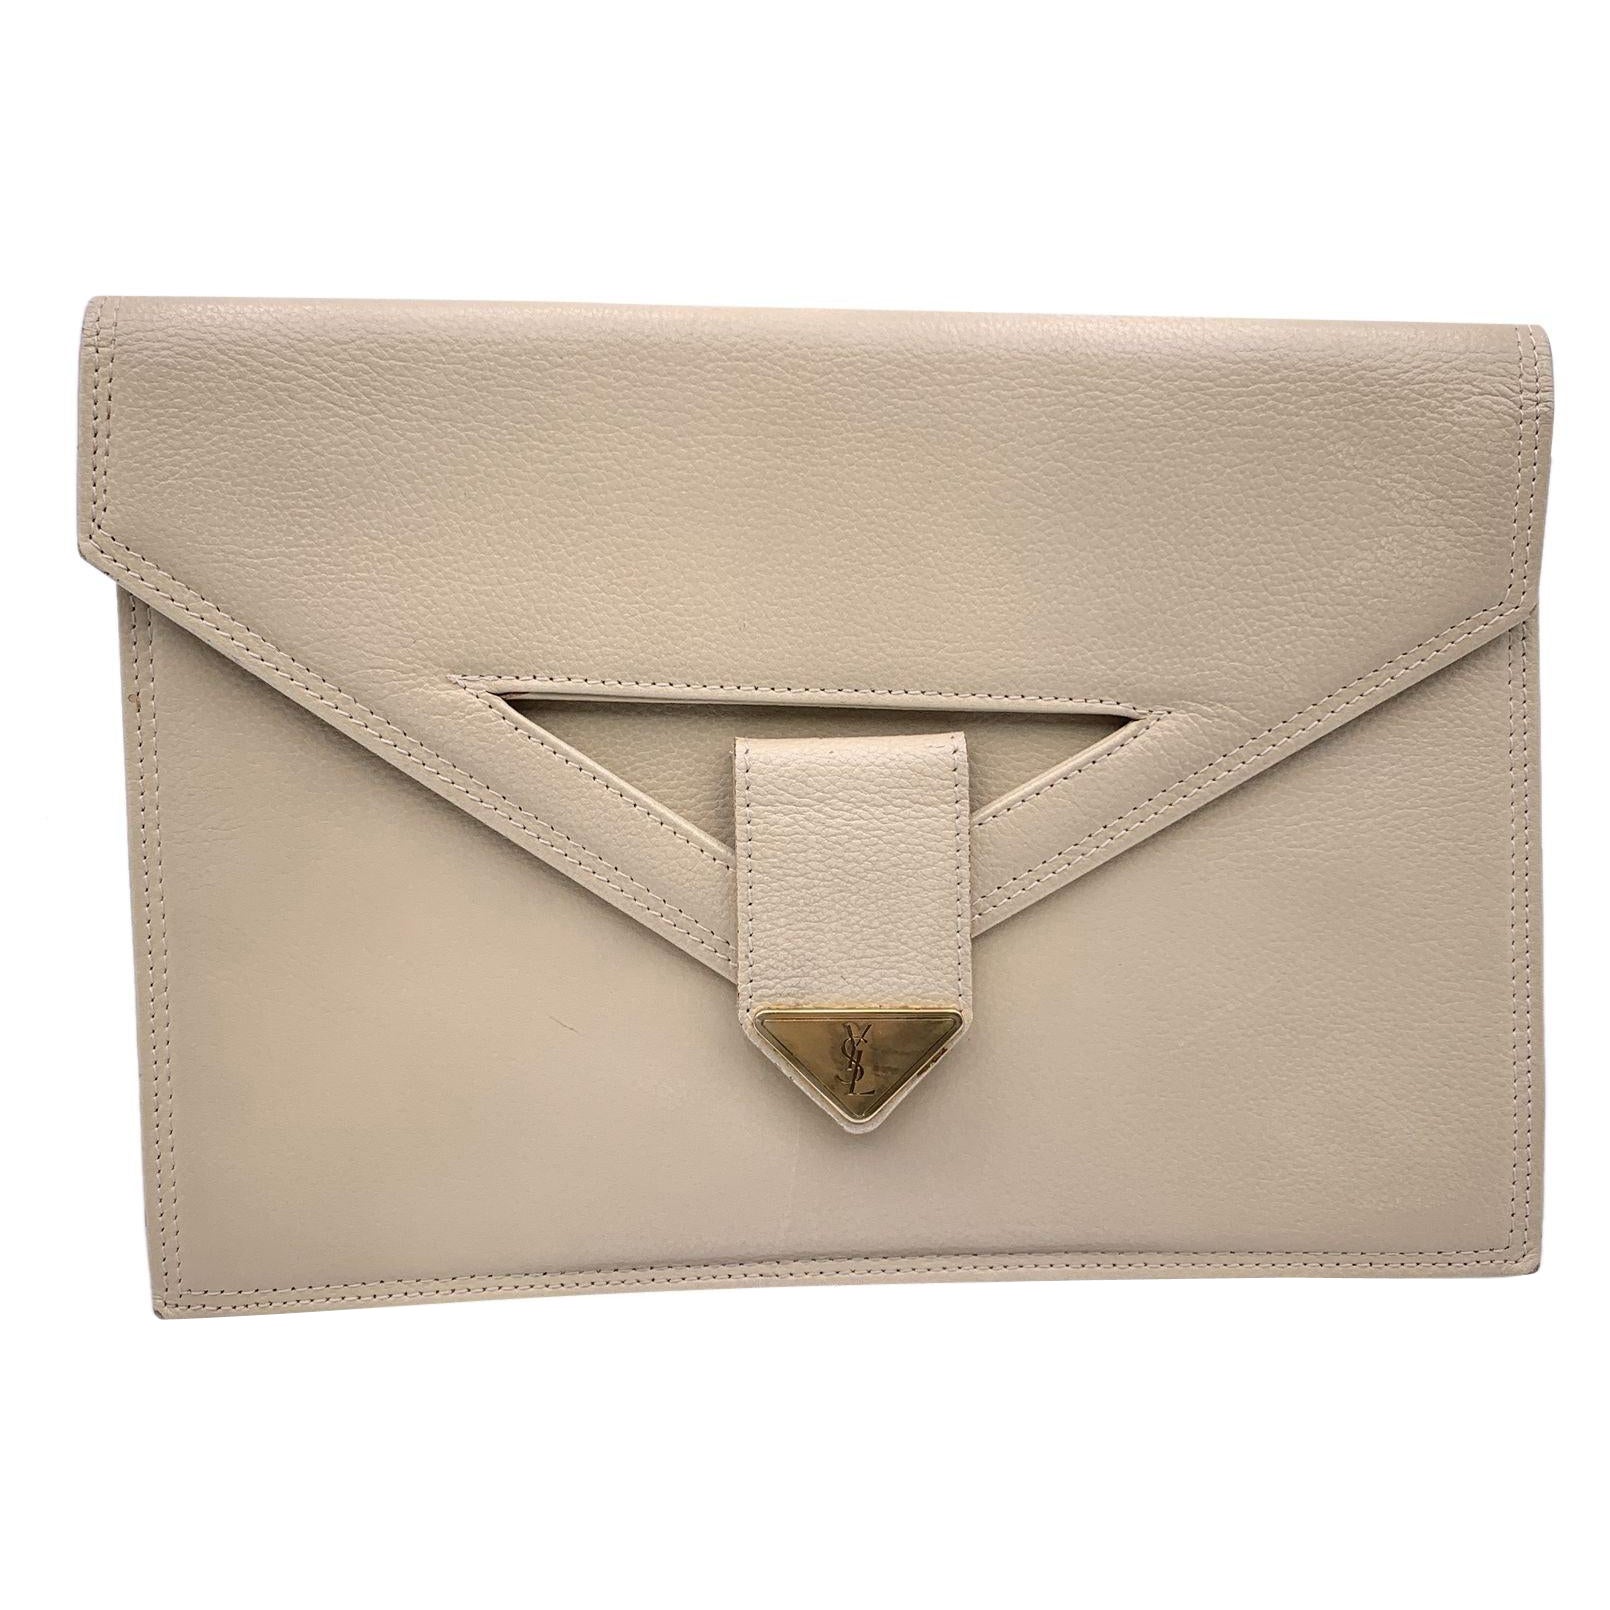 Yves Saint Laurent Vintage Beige Leather Clutch Bag Handbag